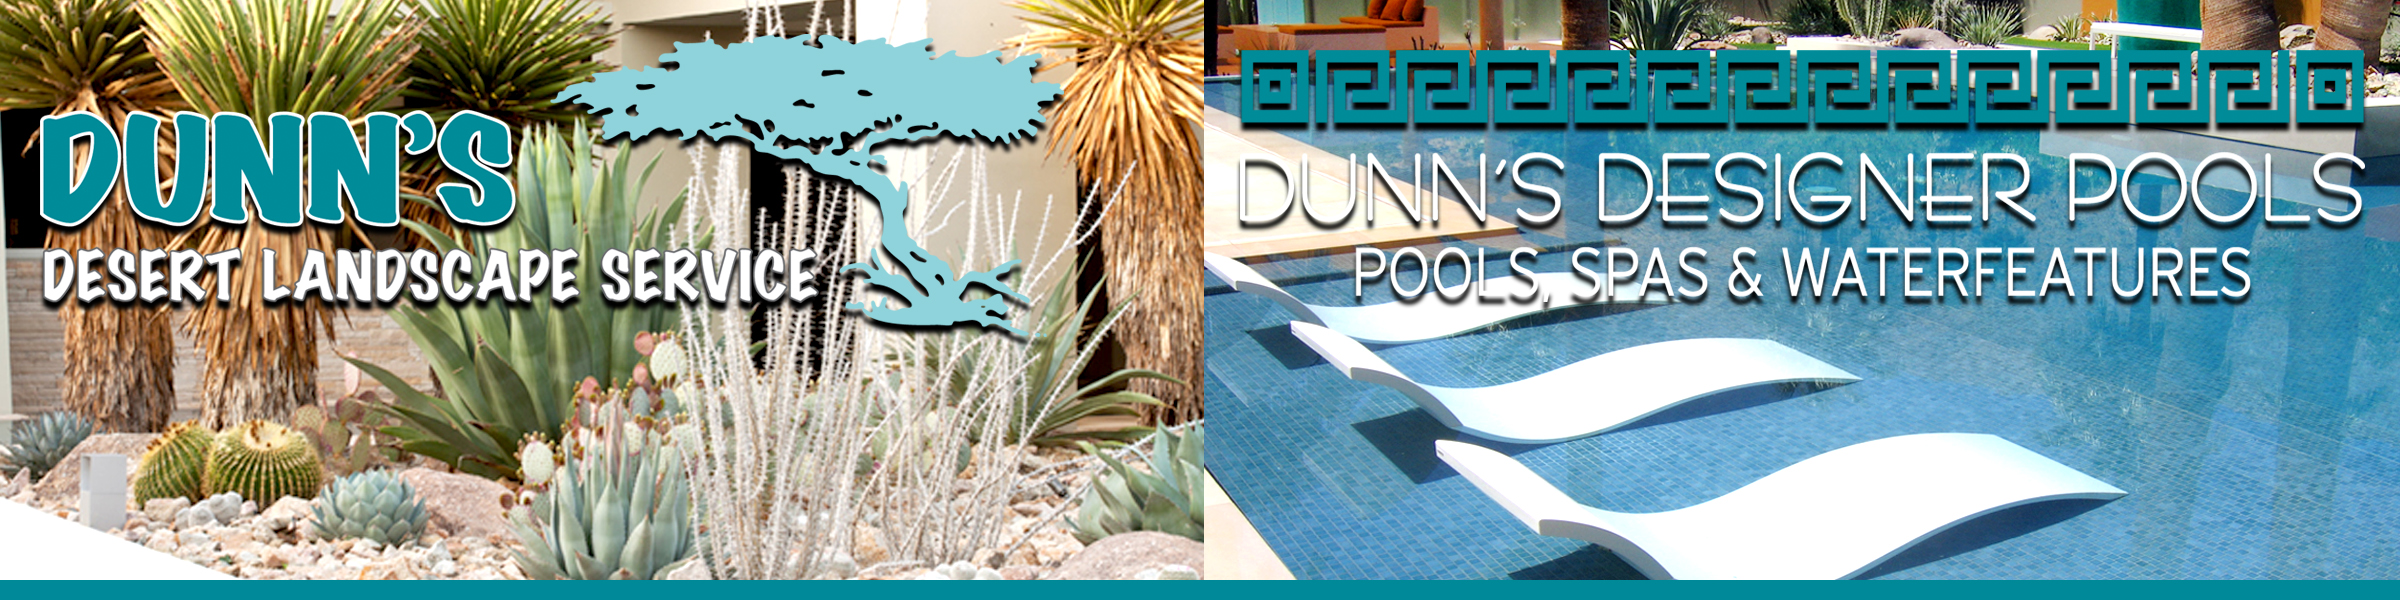 Dunn's Desert Landscape & Designer Pools